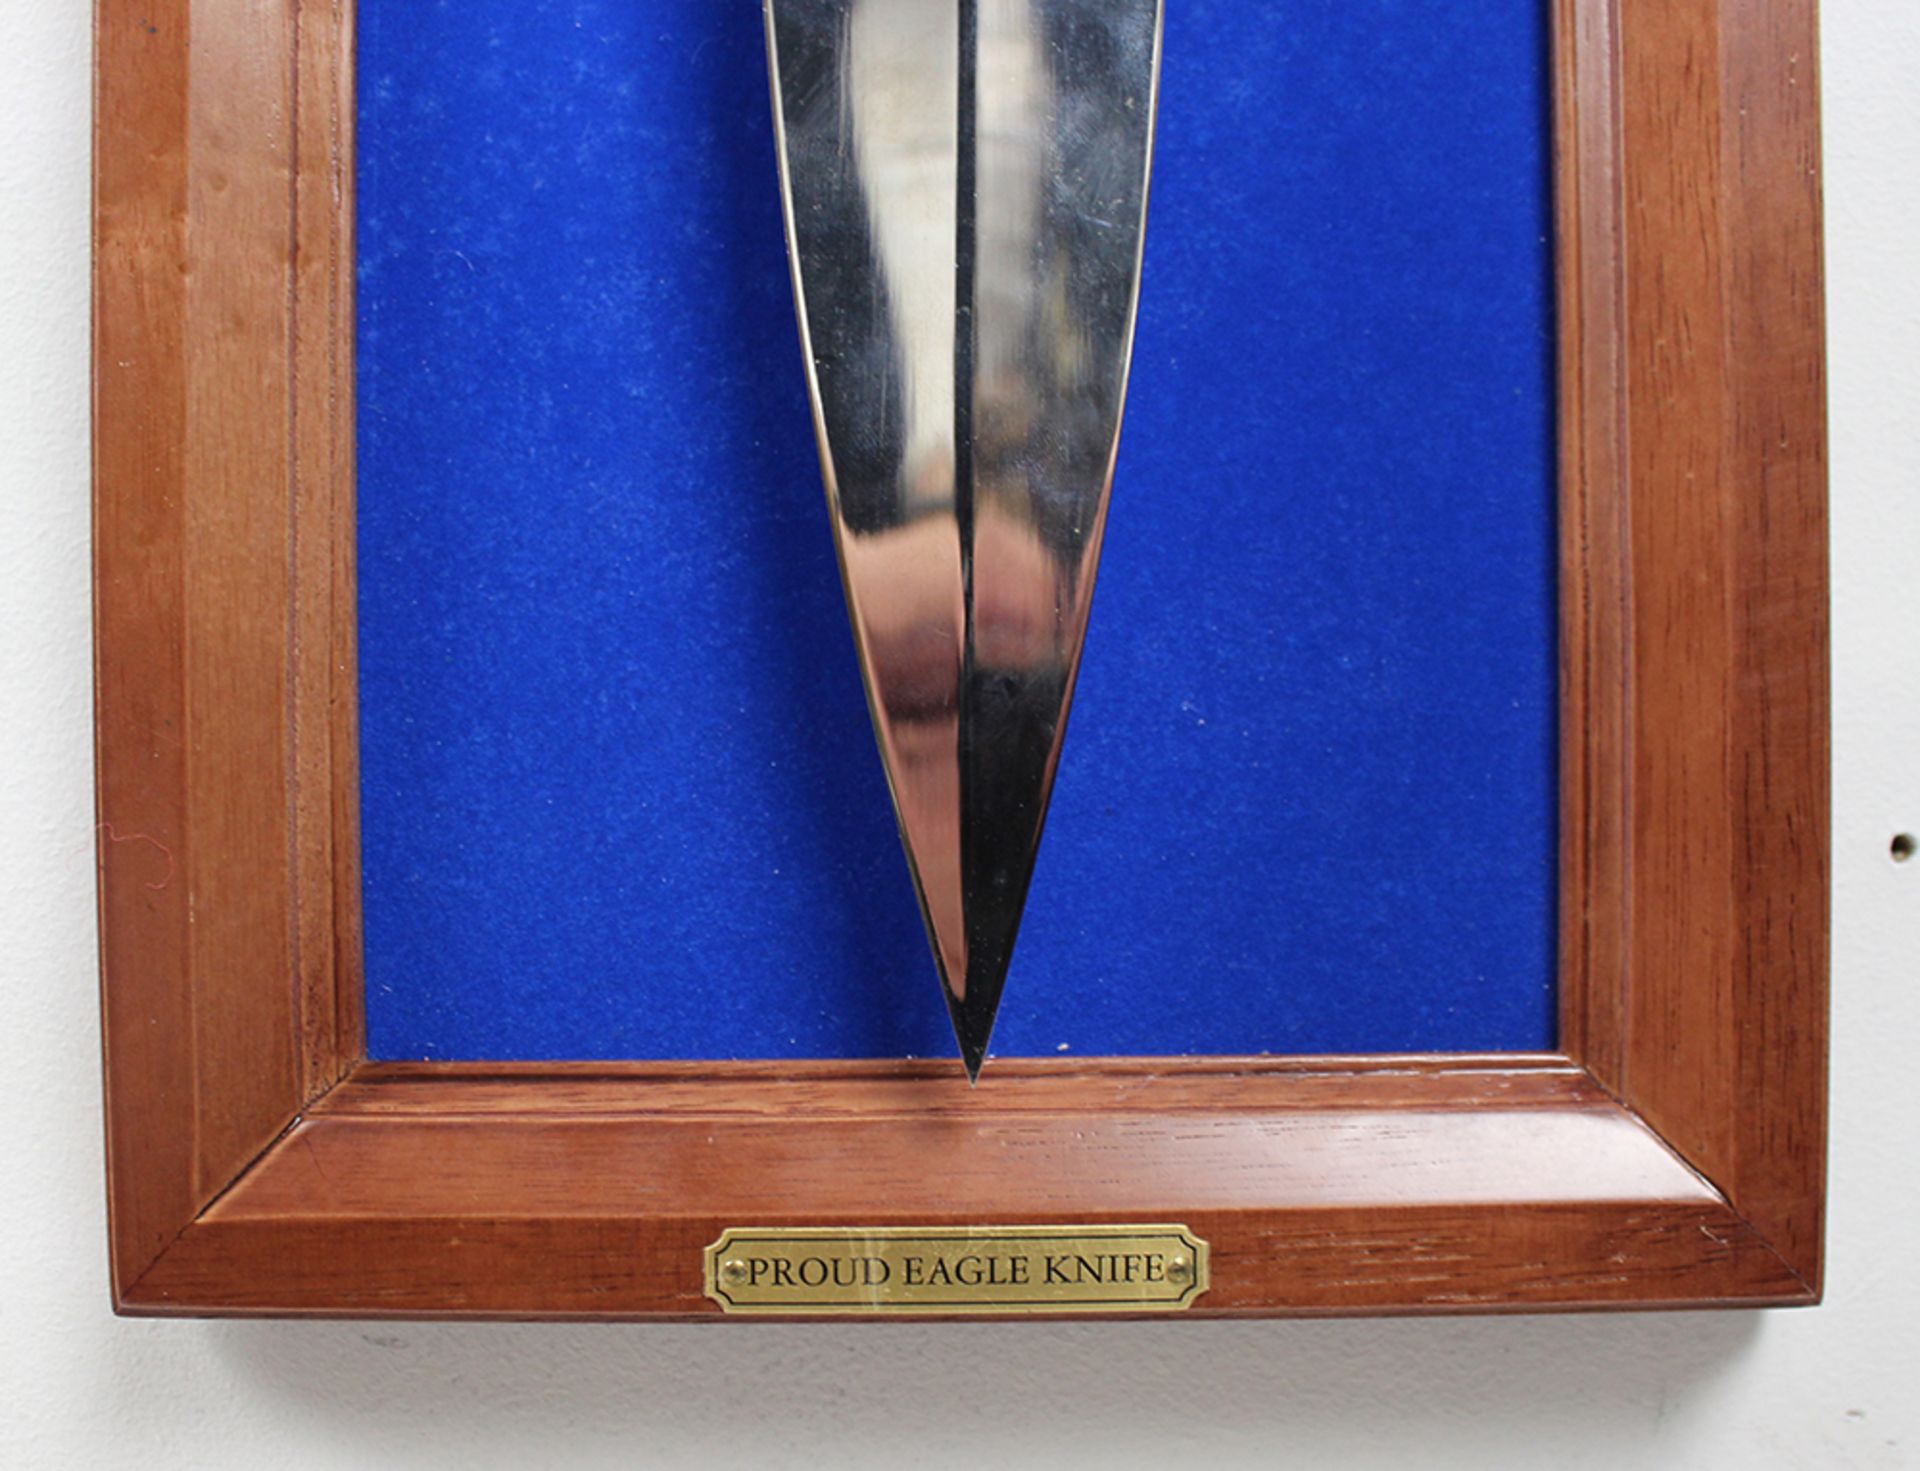 Franklin Mint Proud Eagle Knife - Image 4 of 4